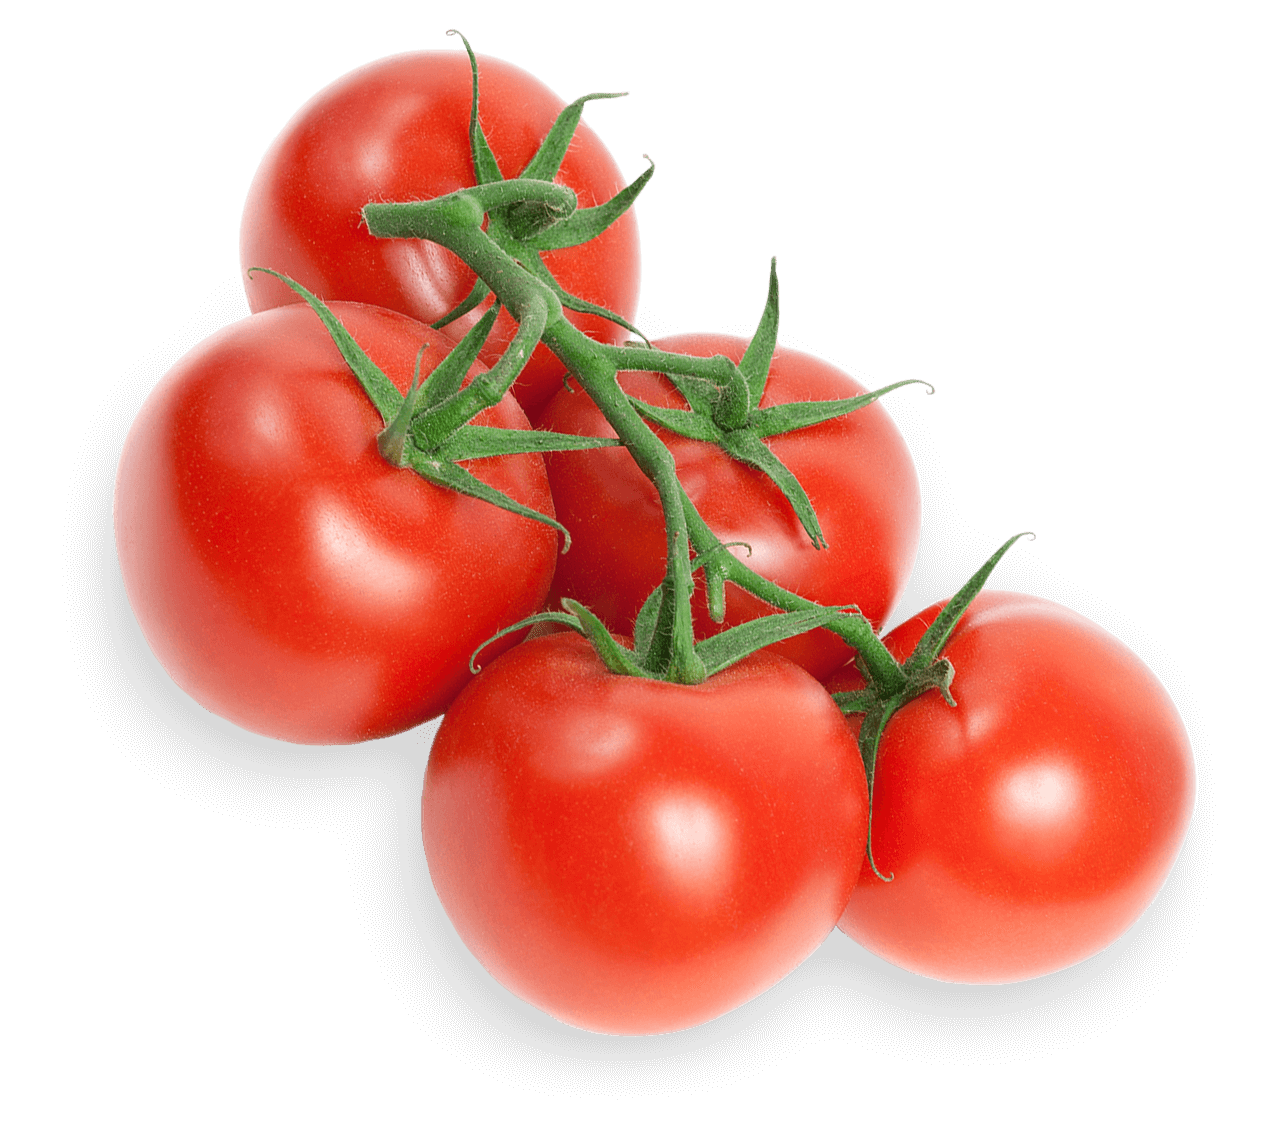 Tomato-on-the-Vine | Lipman Family Farms